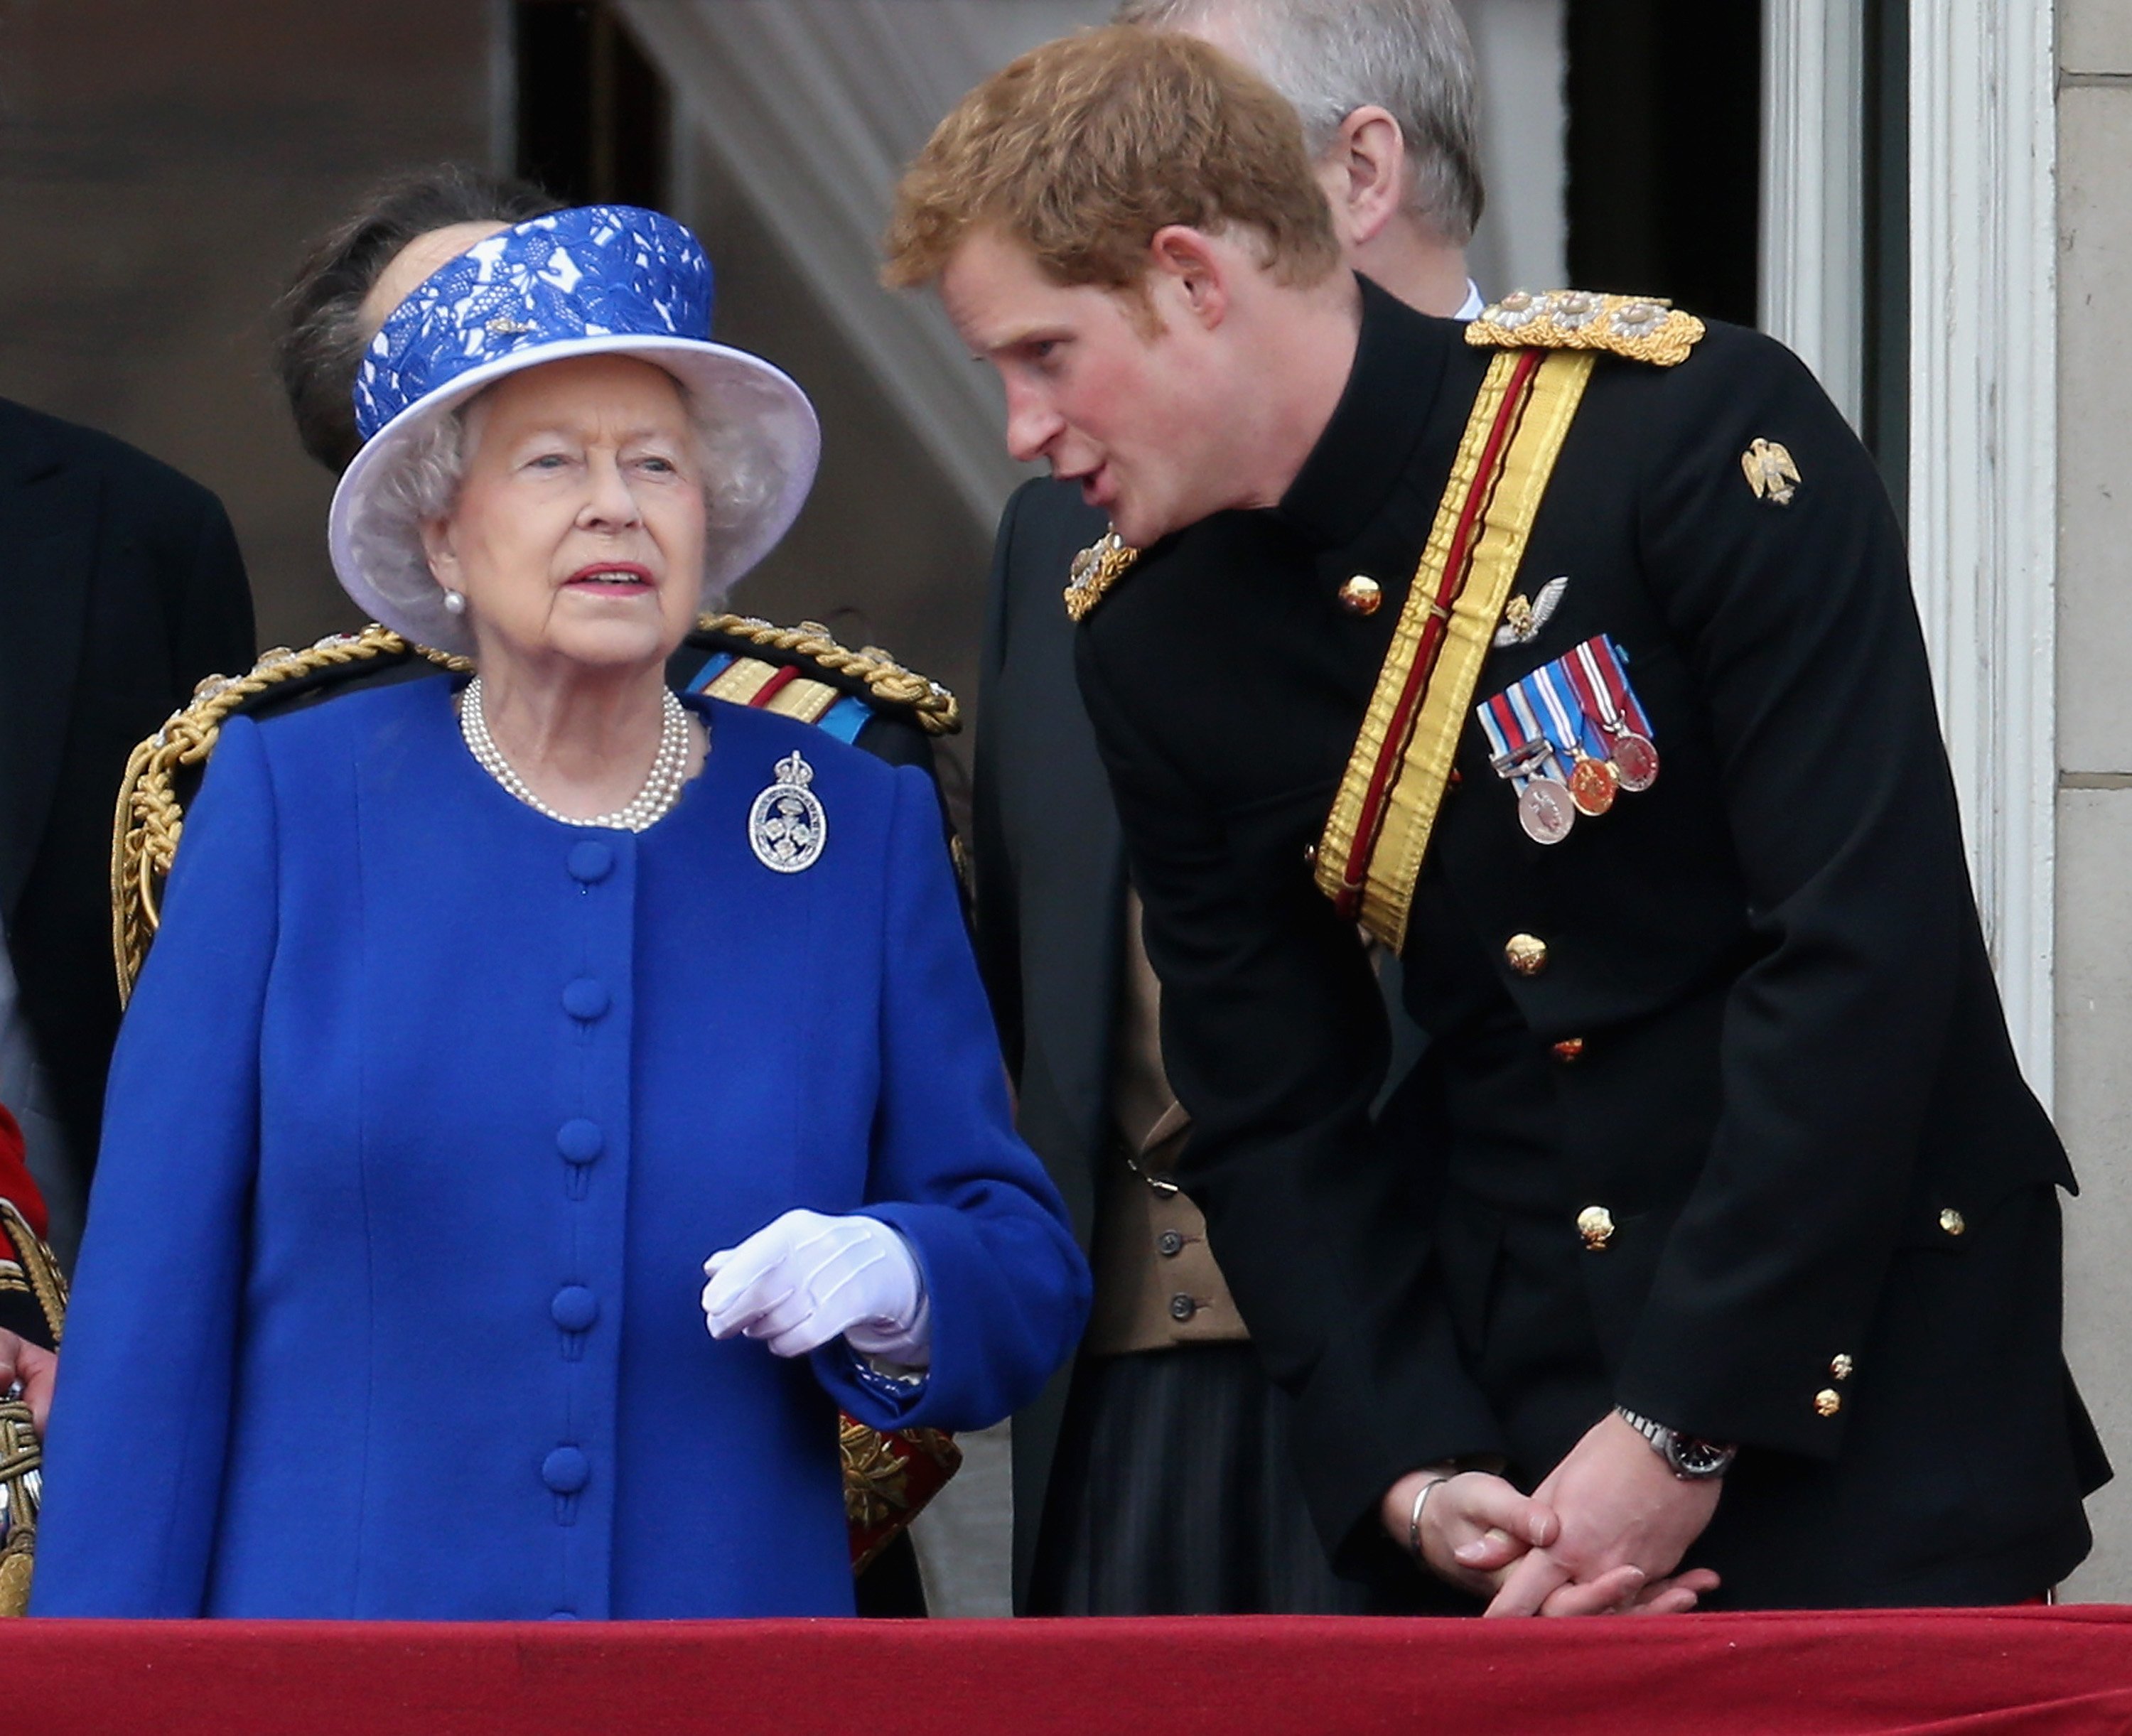 Prinz Harry plaudert mit Königin Elizabeth II. auf dem Balkon des Buckingham Palasts während der jährlichen "Trooping the Colour"-Zeremonie am 15. Juni 2013 in London, England. | Quelle: Getty Images